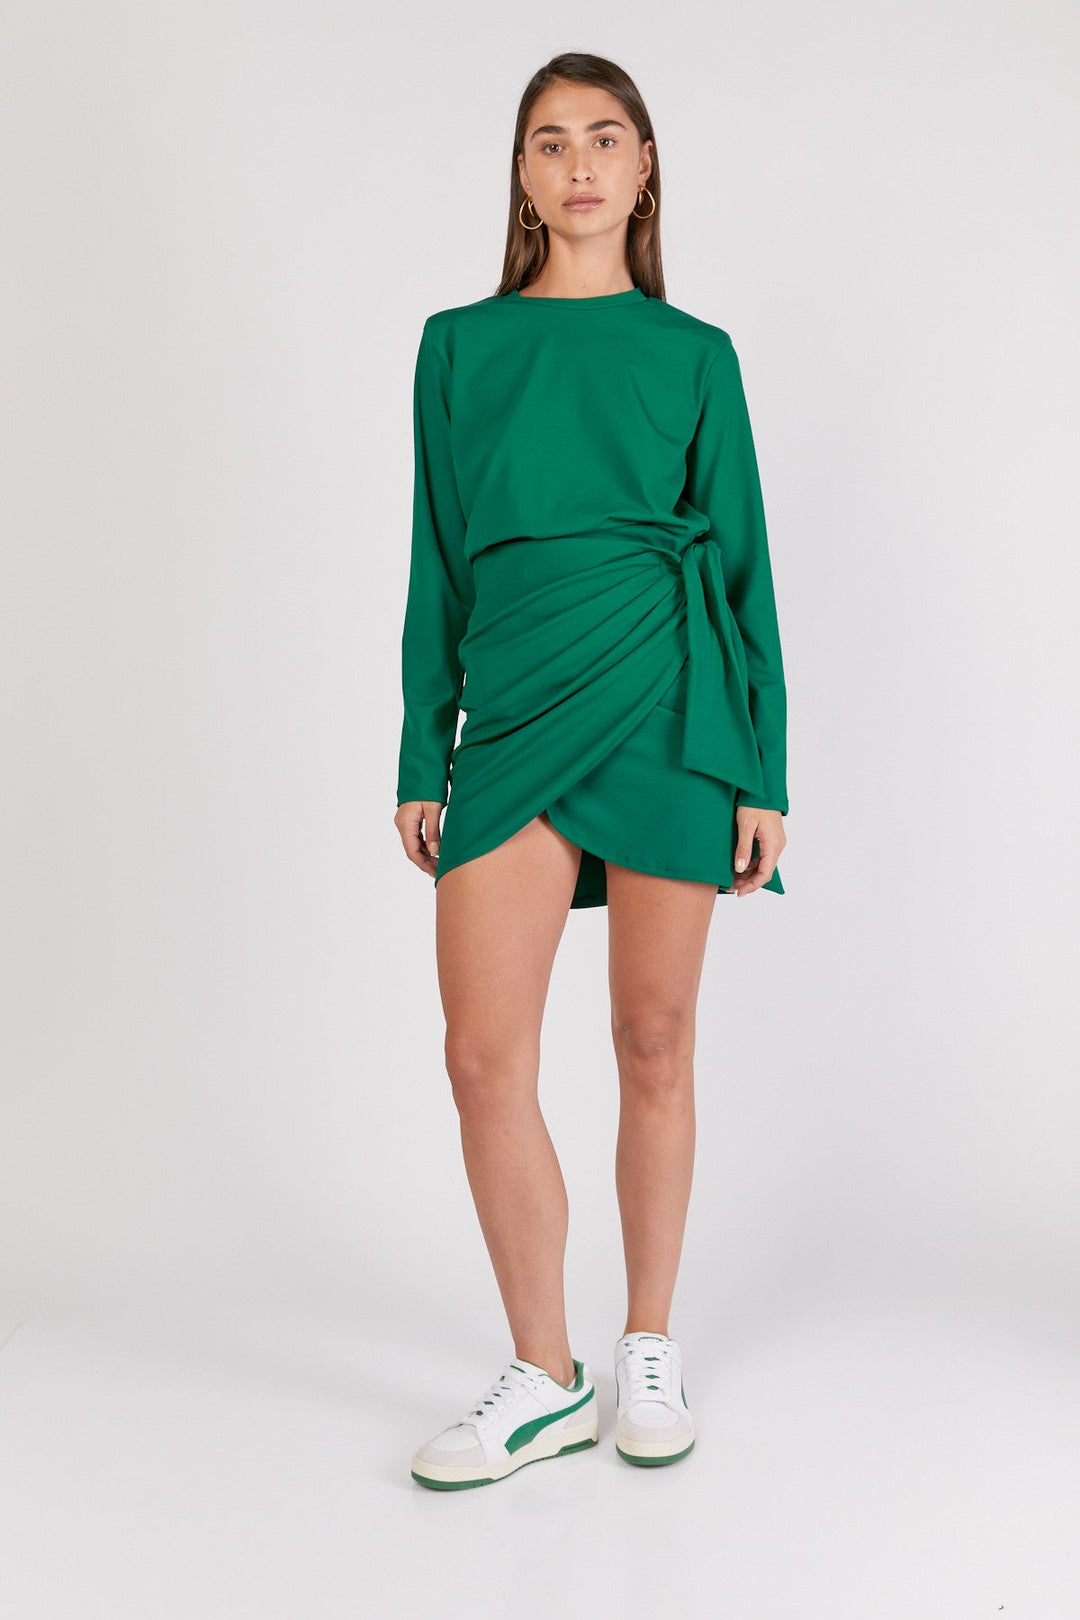 חצאית אלבינה בצבע ירוק - Dana Sidi